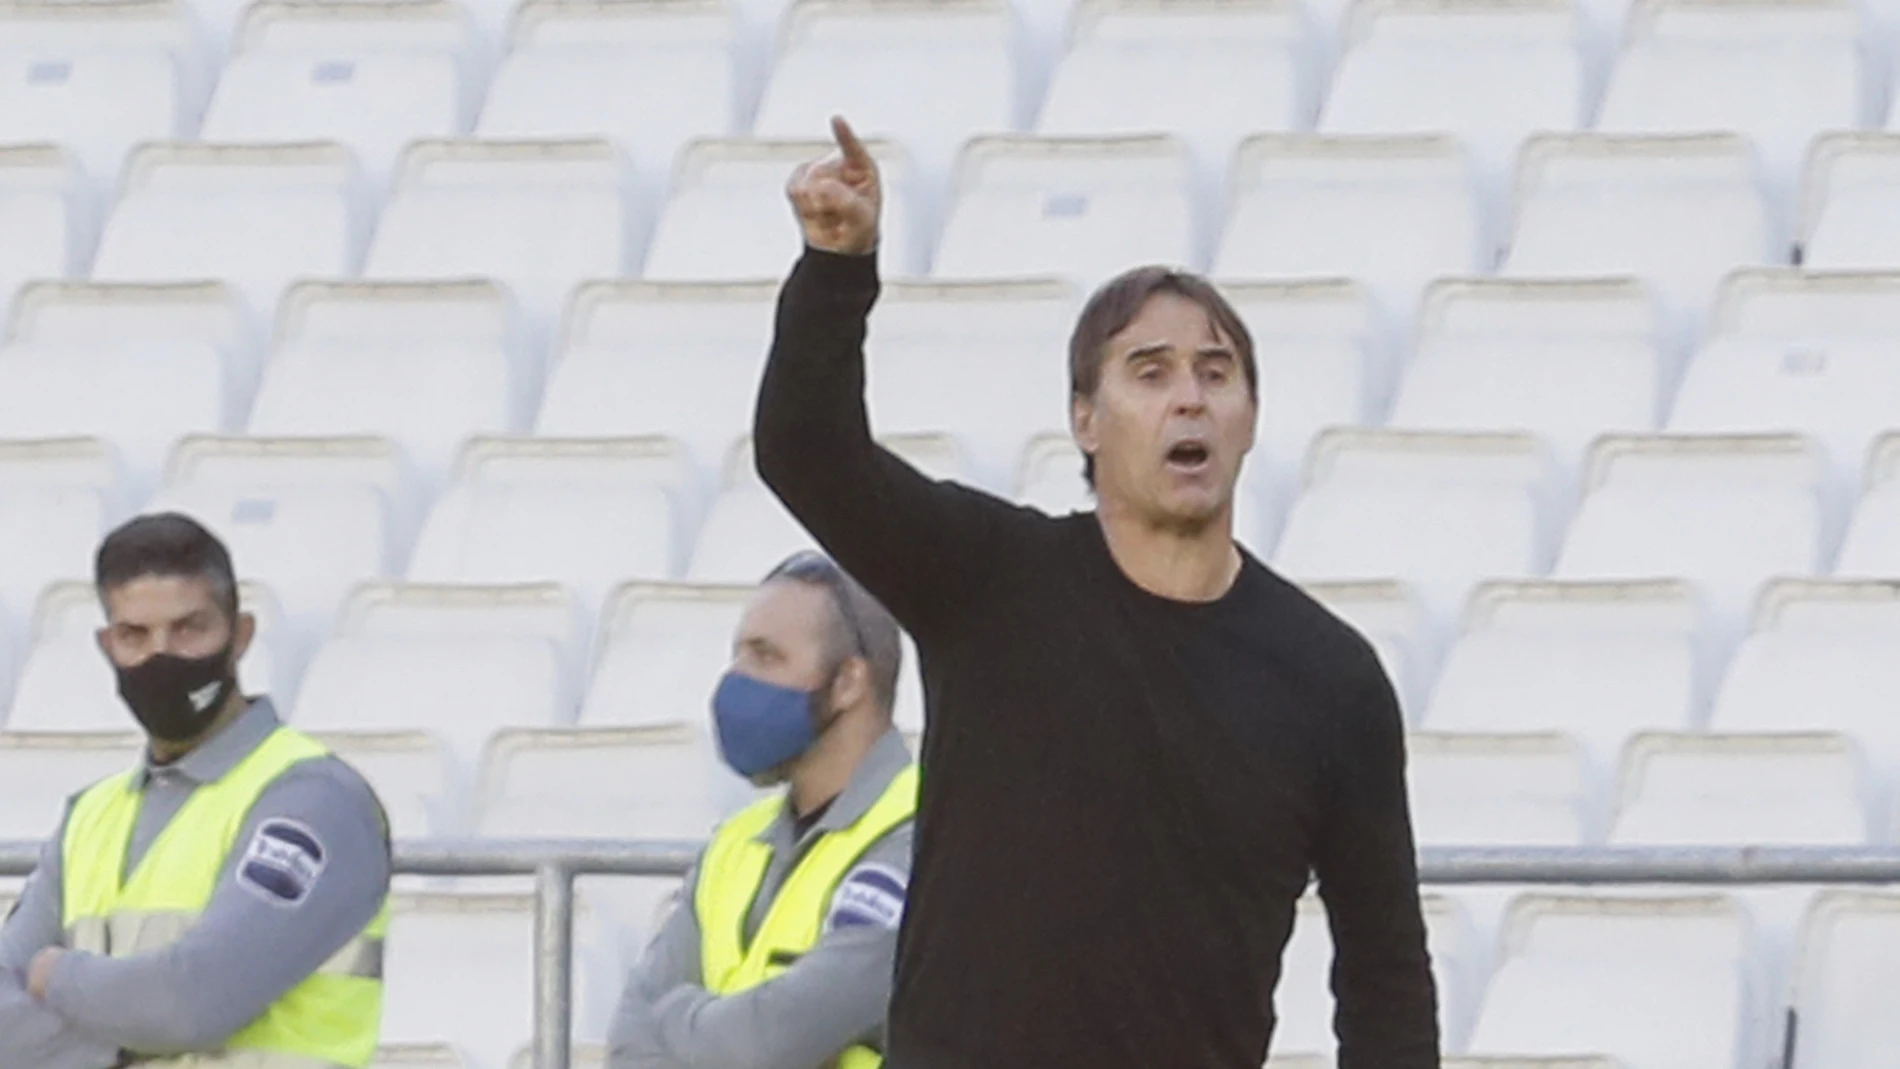 El entrenador del Sevilla Julen Lopetegui. Cómo y quién le prepara la ropa ha sido tema de conversación machista en la Cope